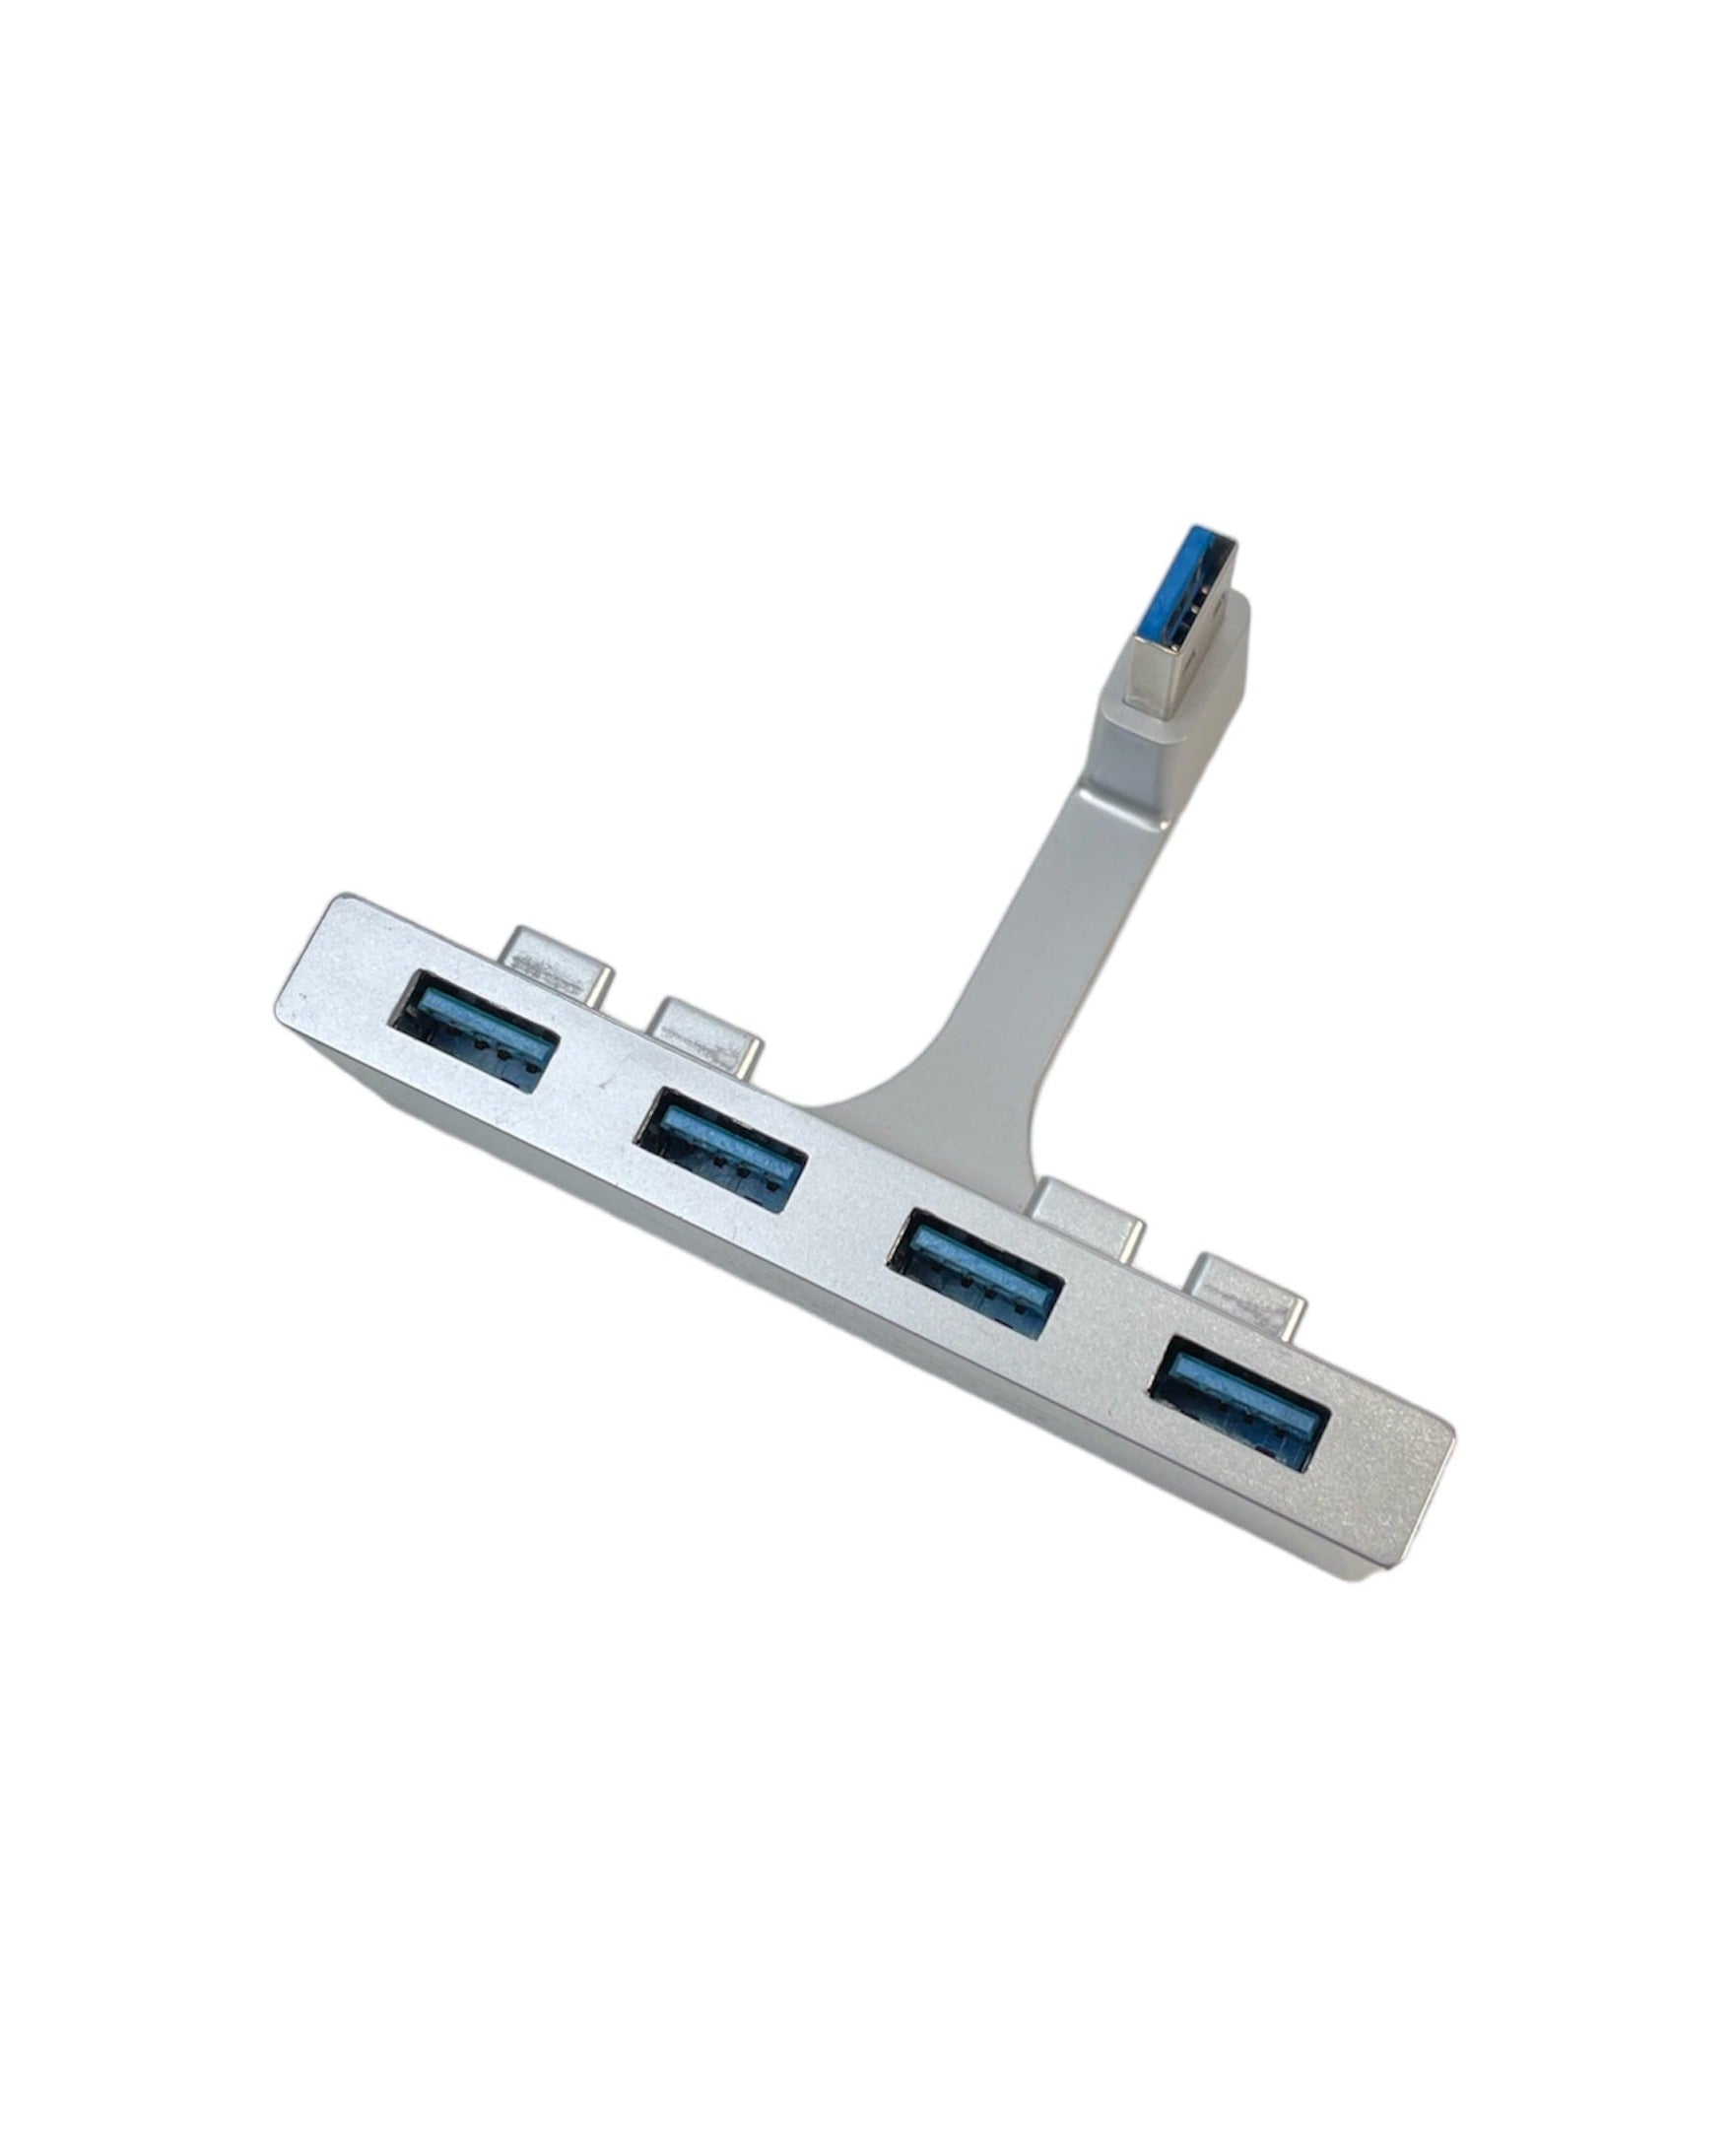 Hub USB 4 Ports Premium de Sabrent